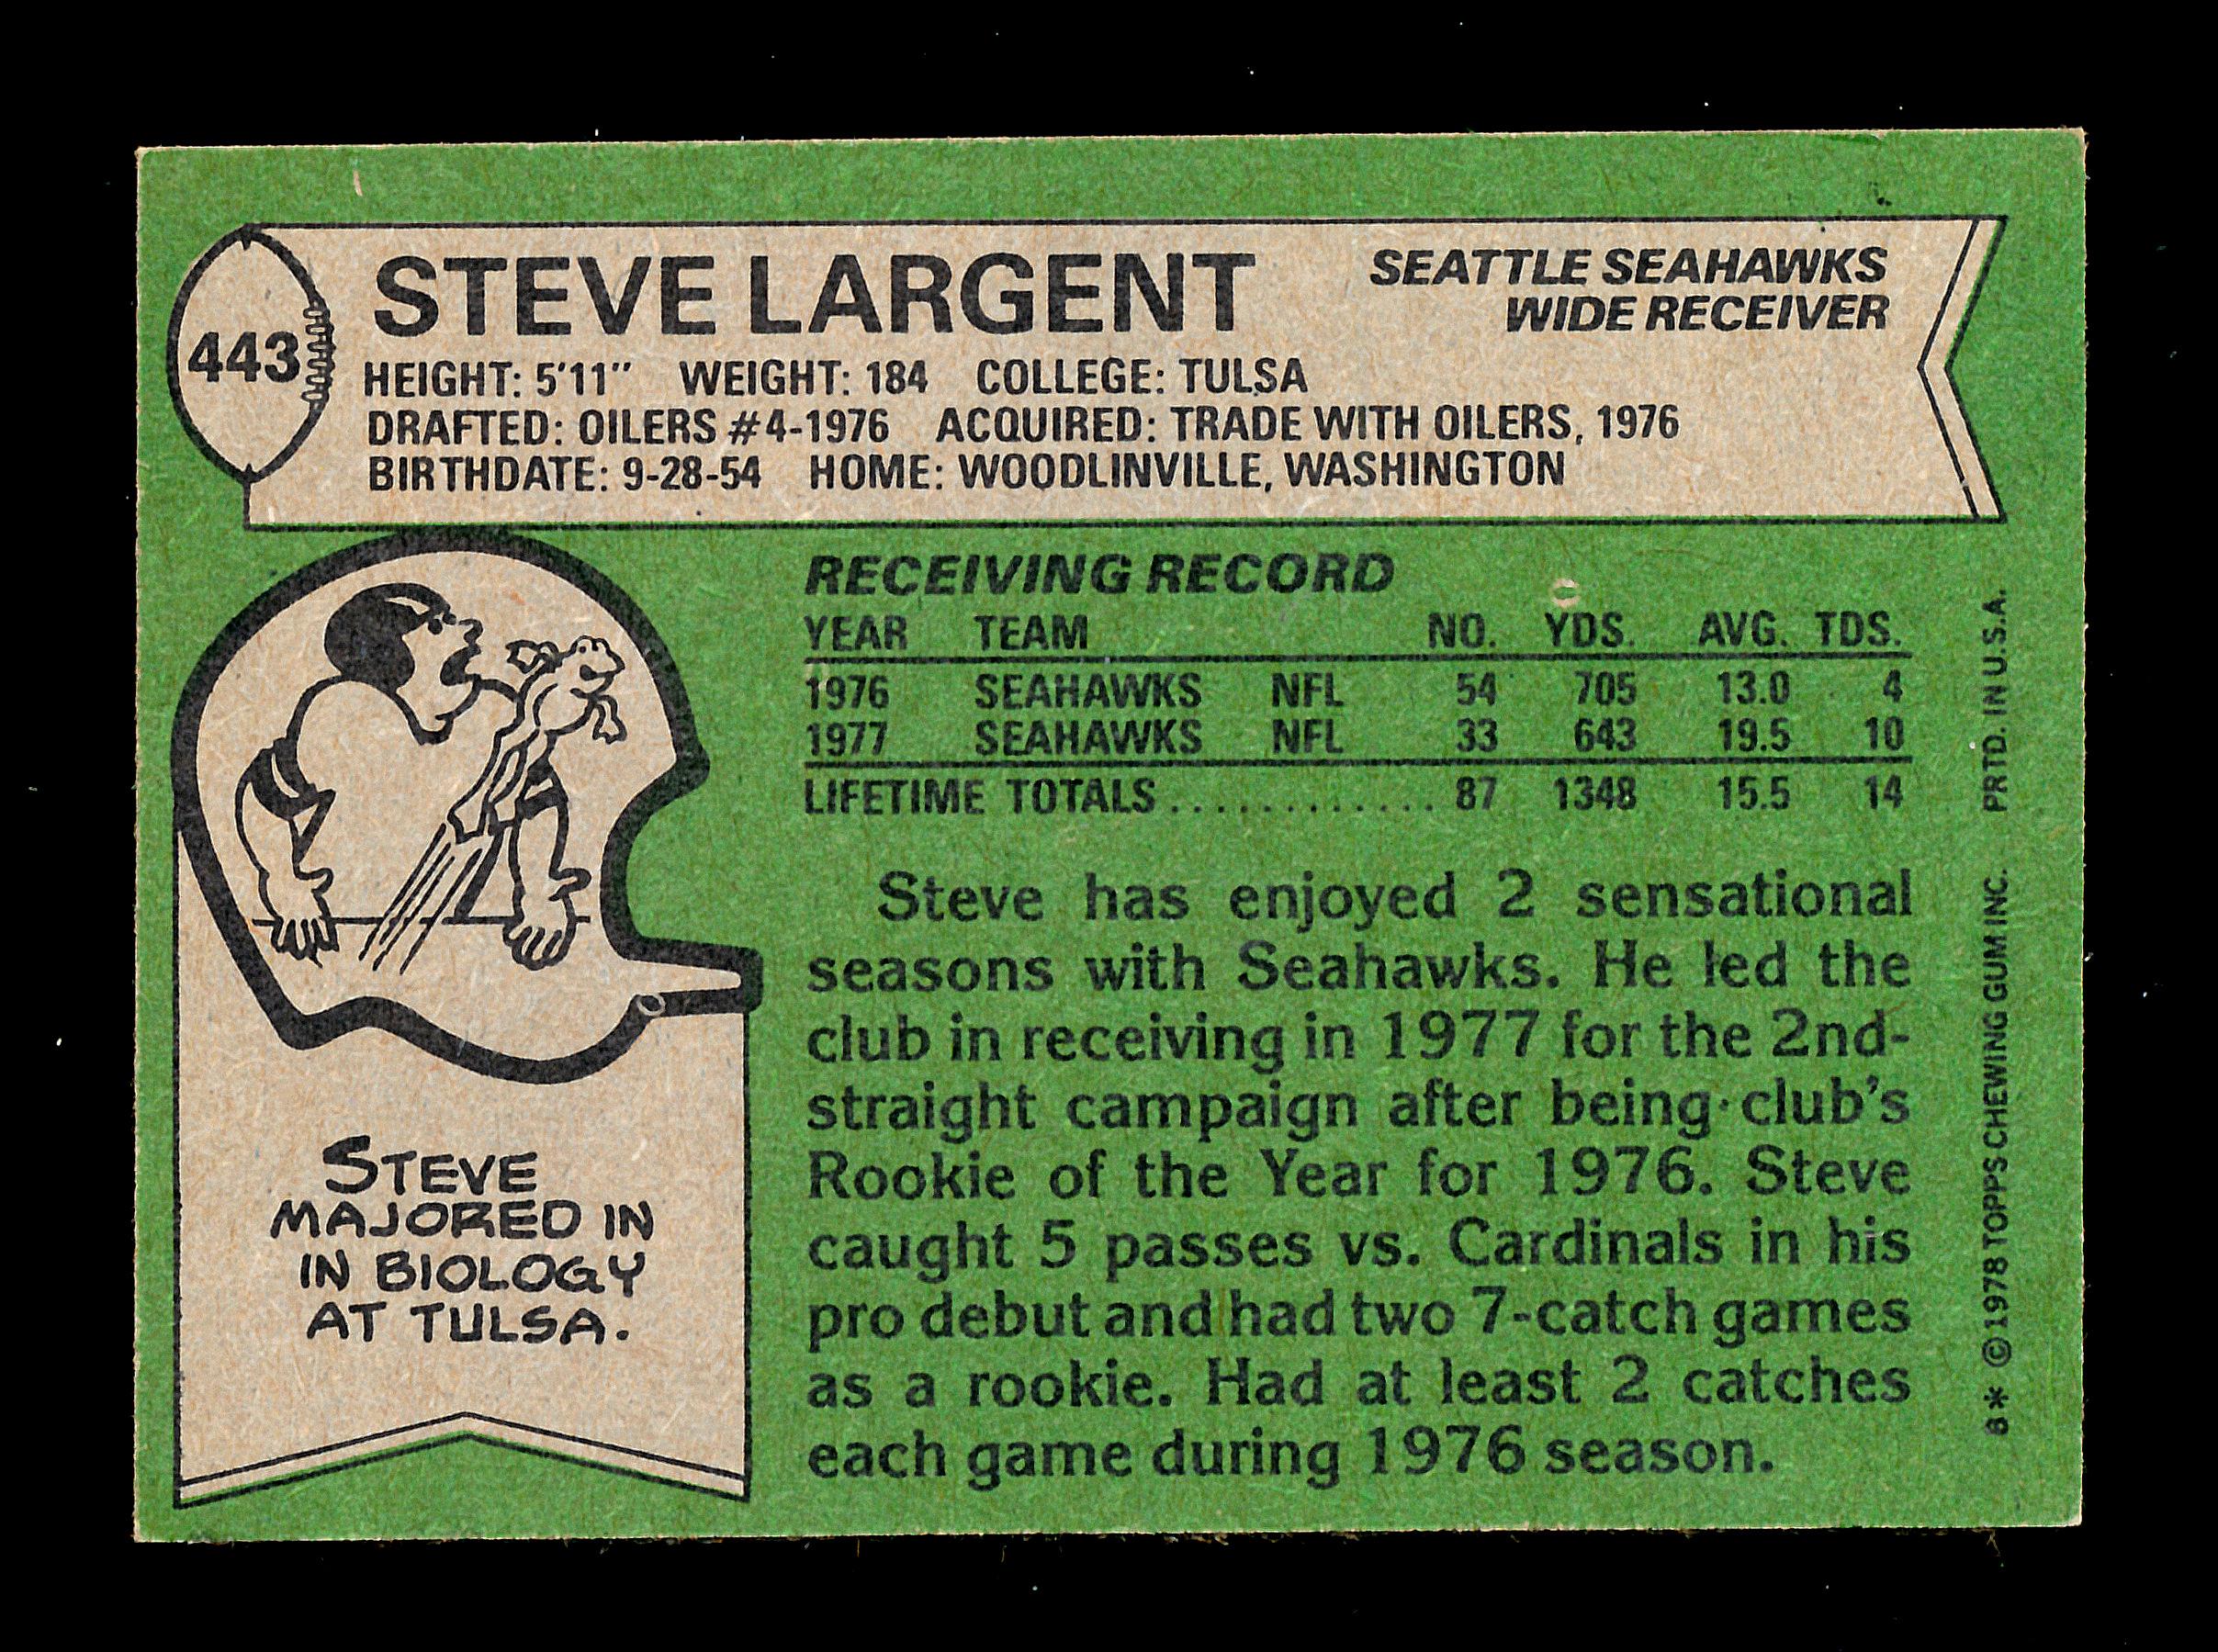 1978 Topps Football Card #443 Hall of Famer Steve Largent Seattle Seahawks.